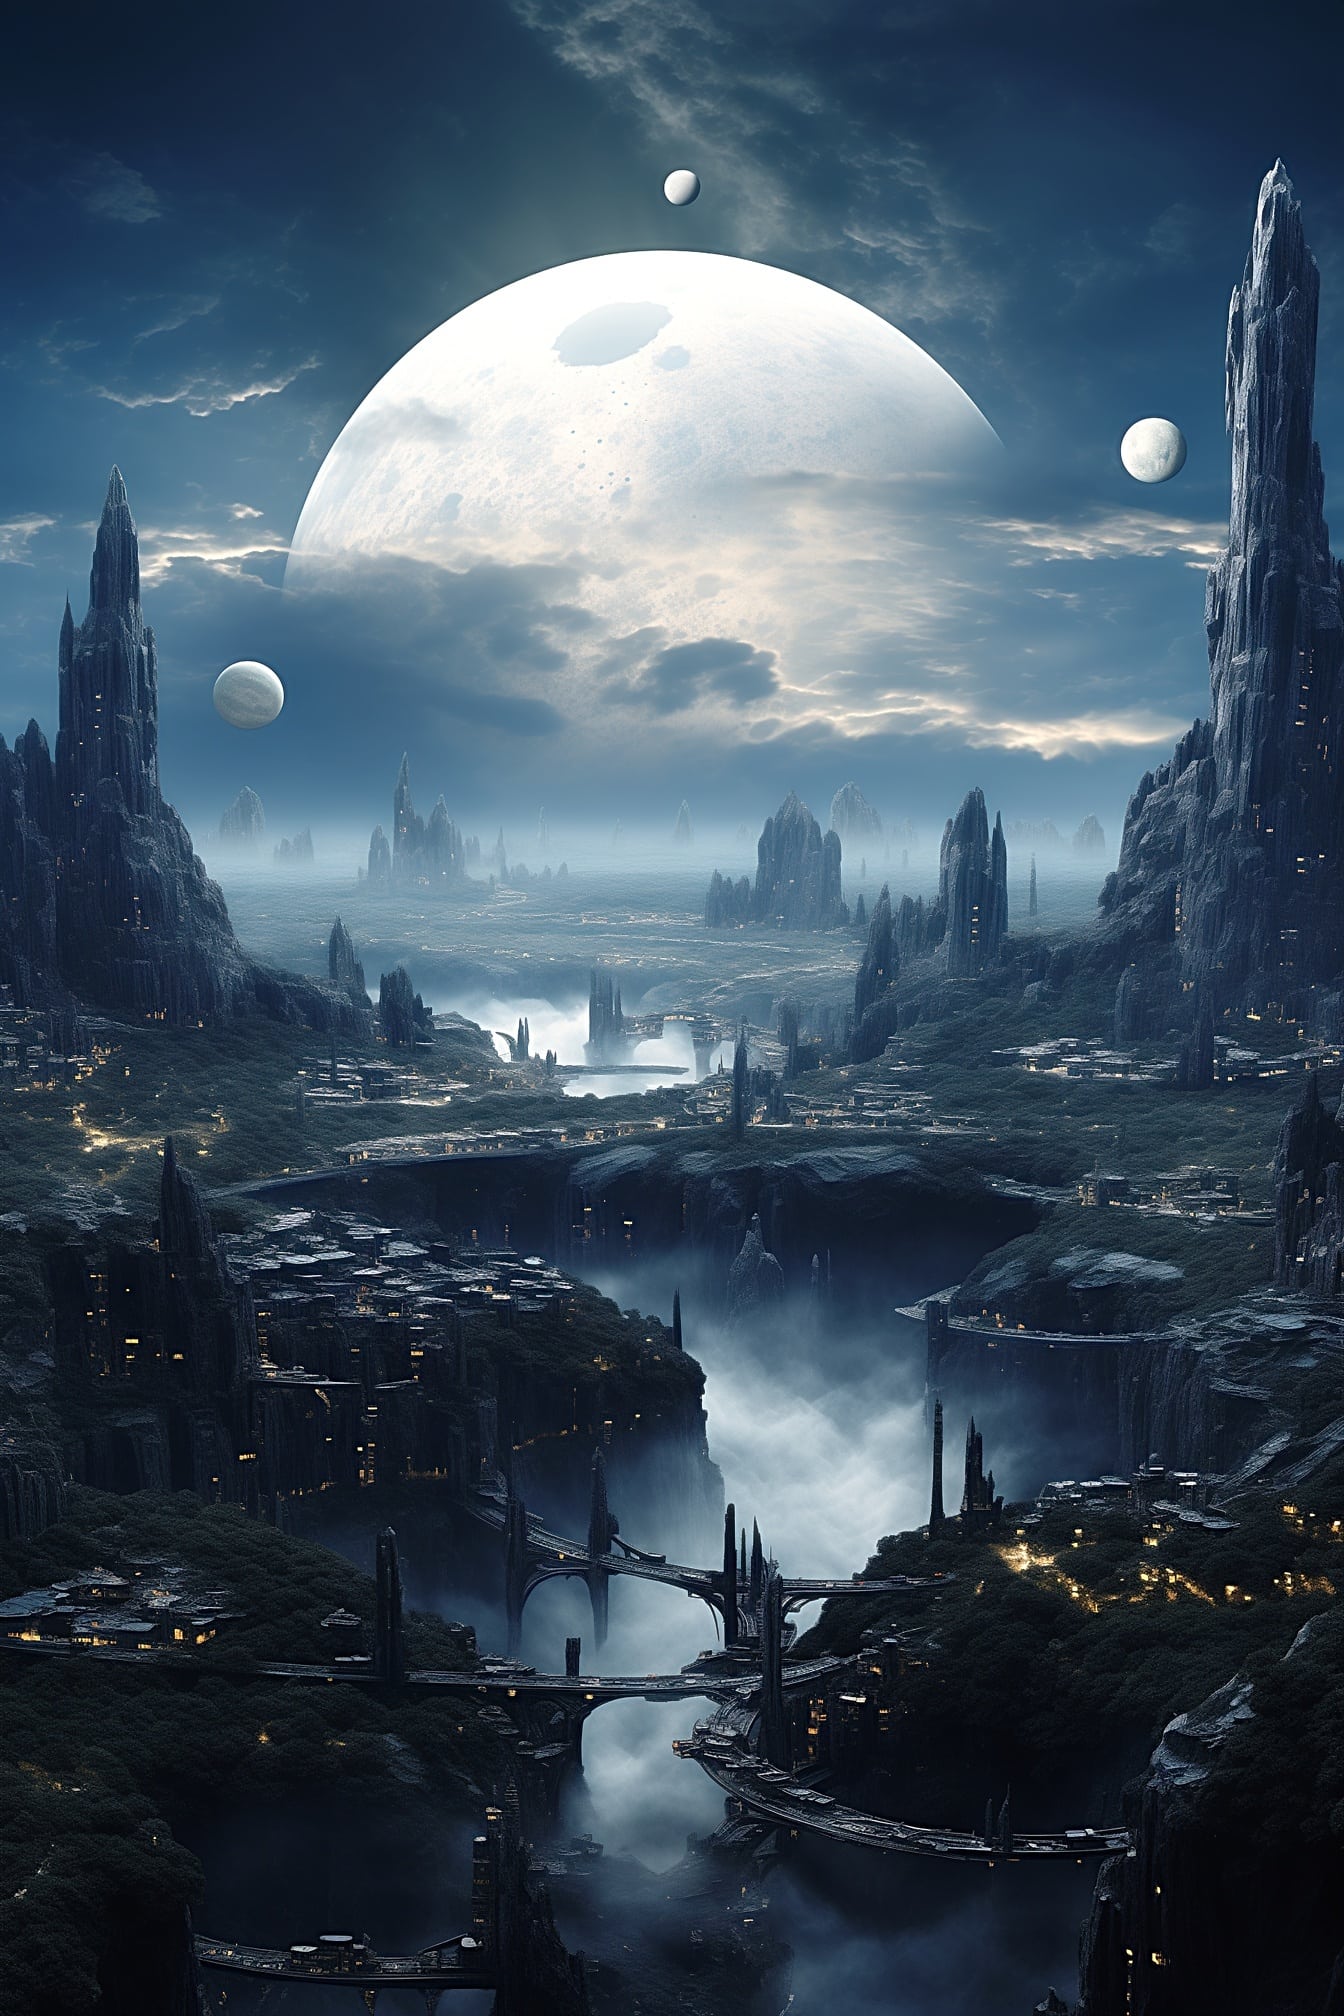 Fantastinen kuun metropoli surrealistisella planeetalla, jossa on useita pieniä ja yksi iso kuu taivaalla